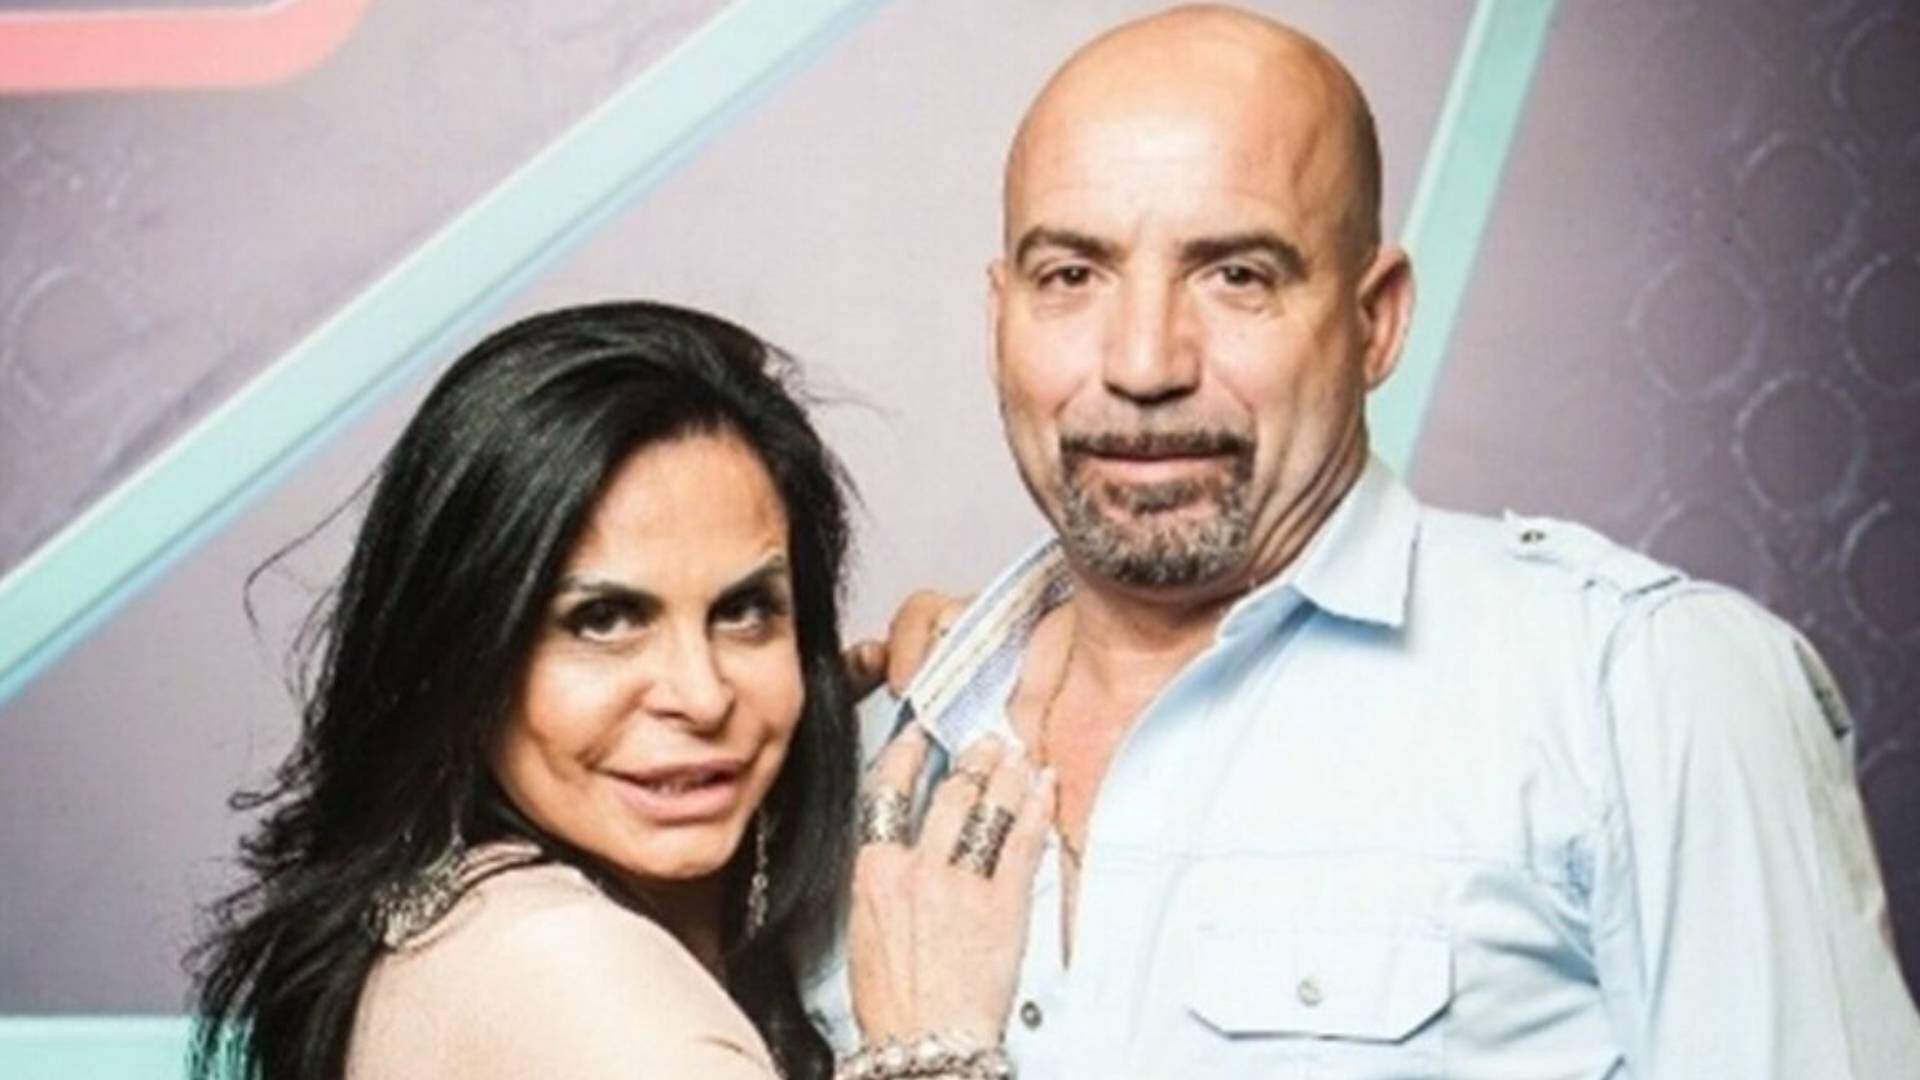 Morre Carlos Marques, ex-marido de Gretchen, vítima de grave doença - Metropolitana FM